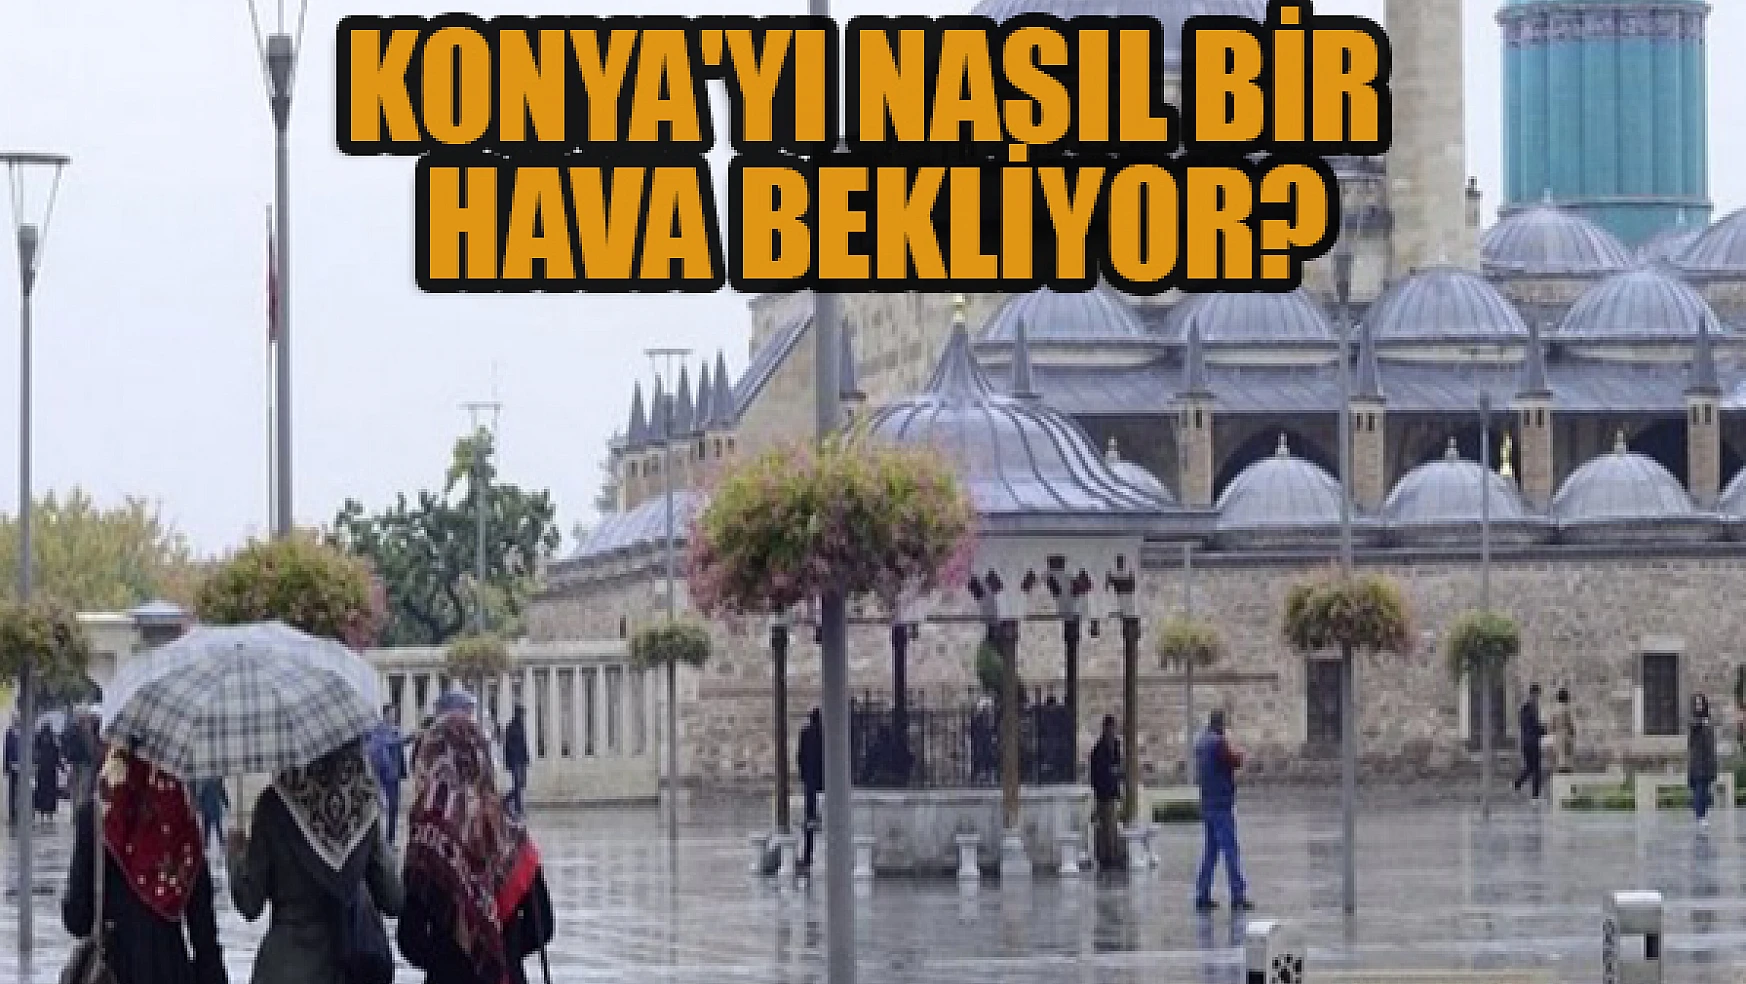 Konya'yı nasıl bir hava bekliyor?